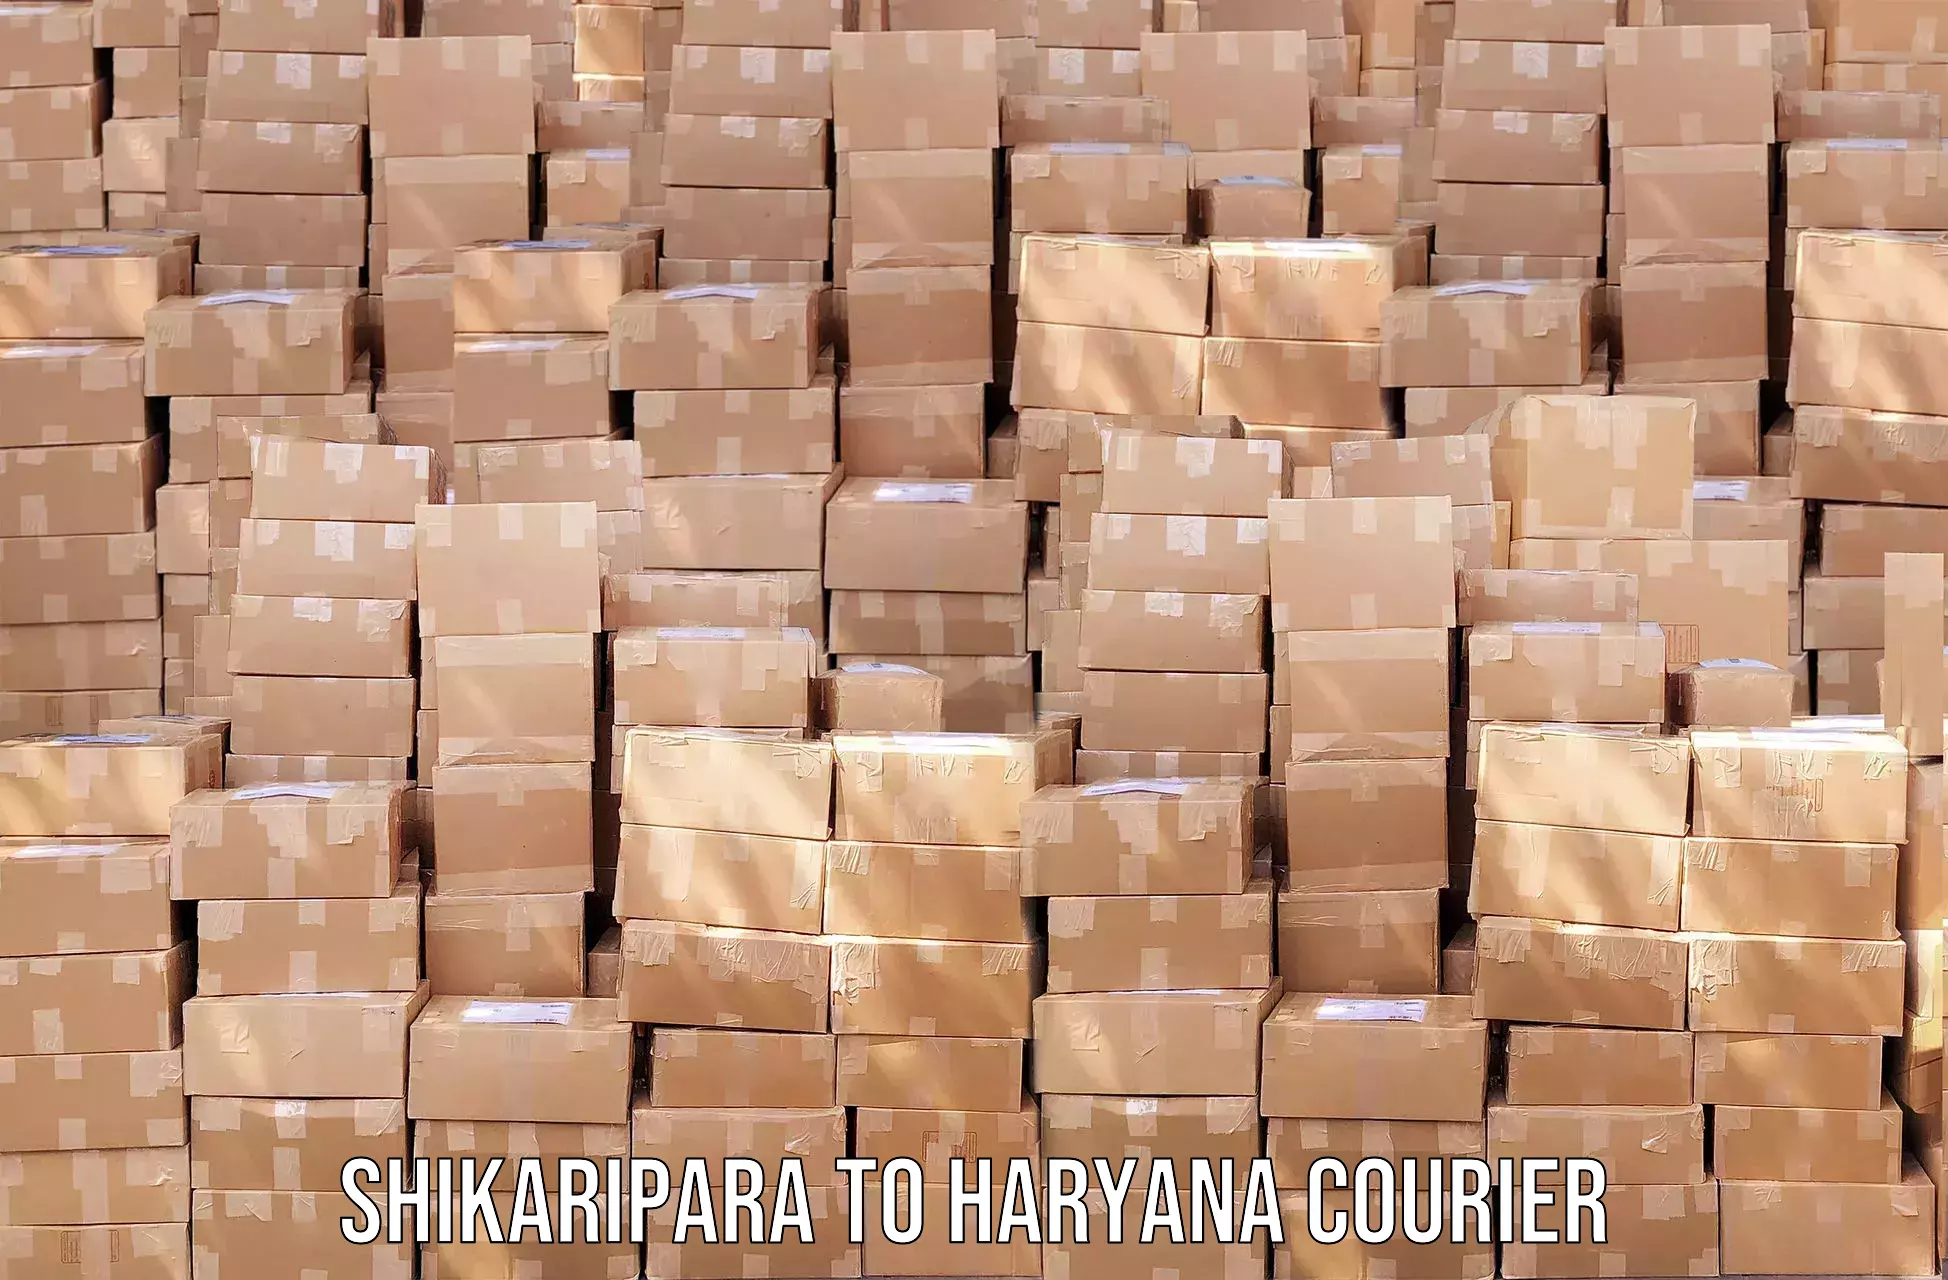 Courier services Shikaripara to Chaudhary Charan Singh Haryana Agricultural University Hisar